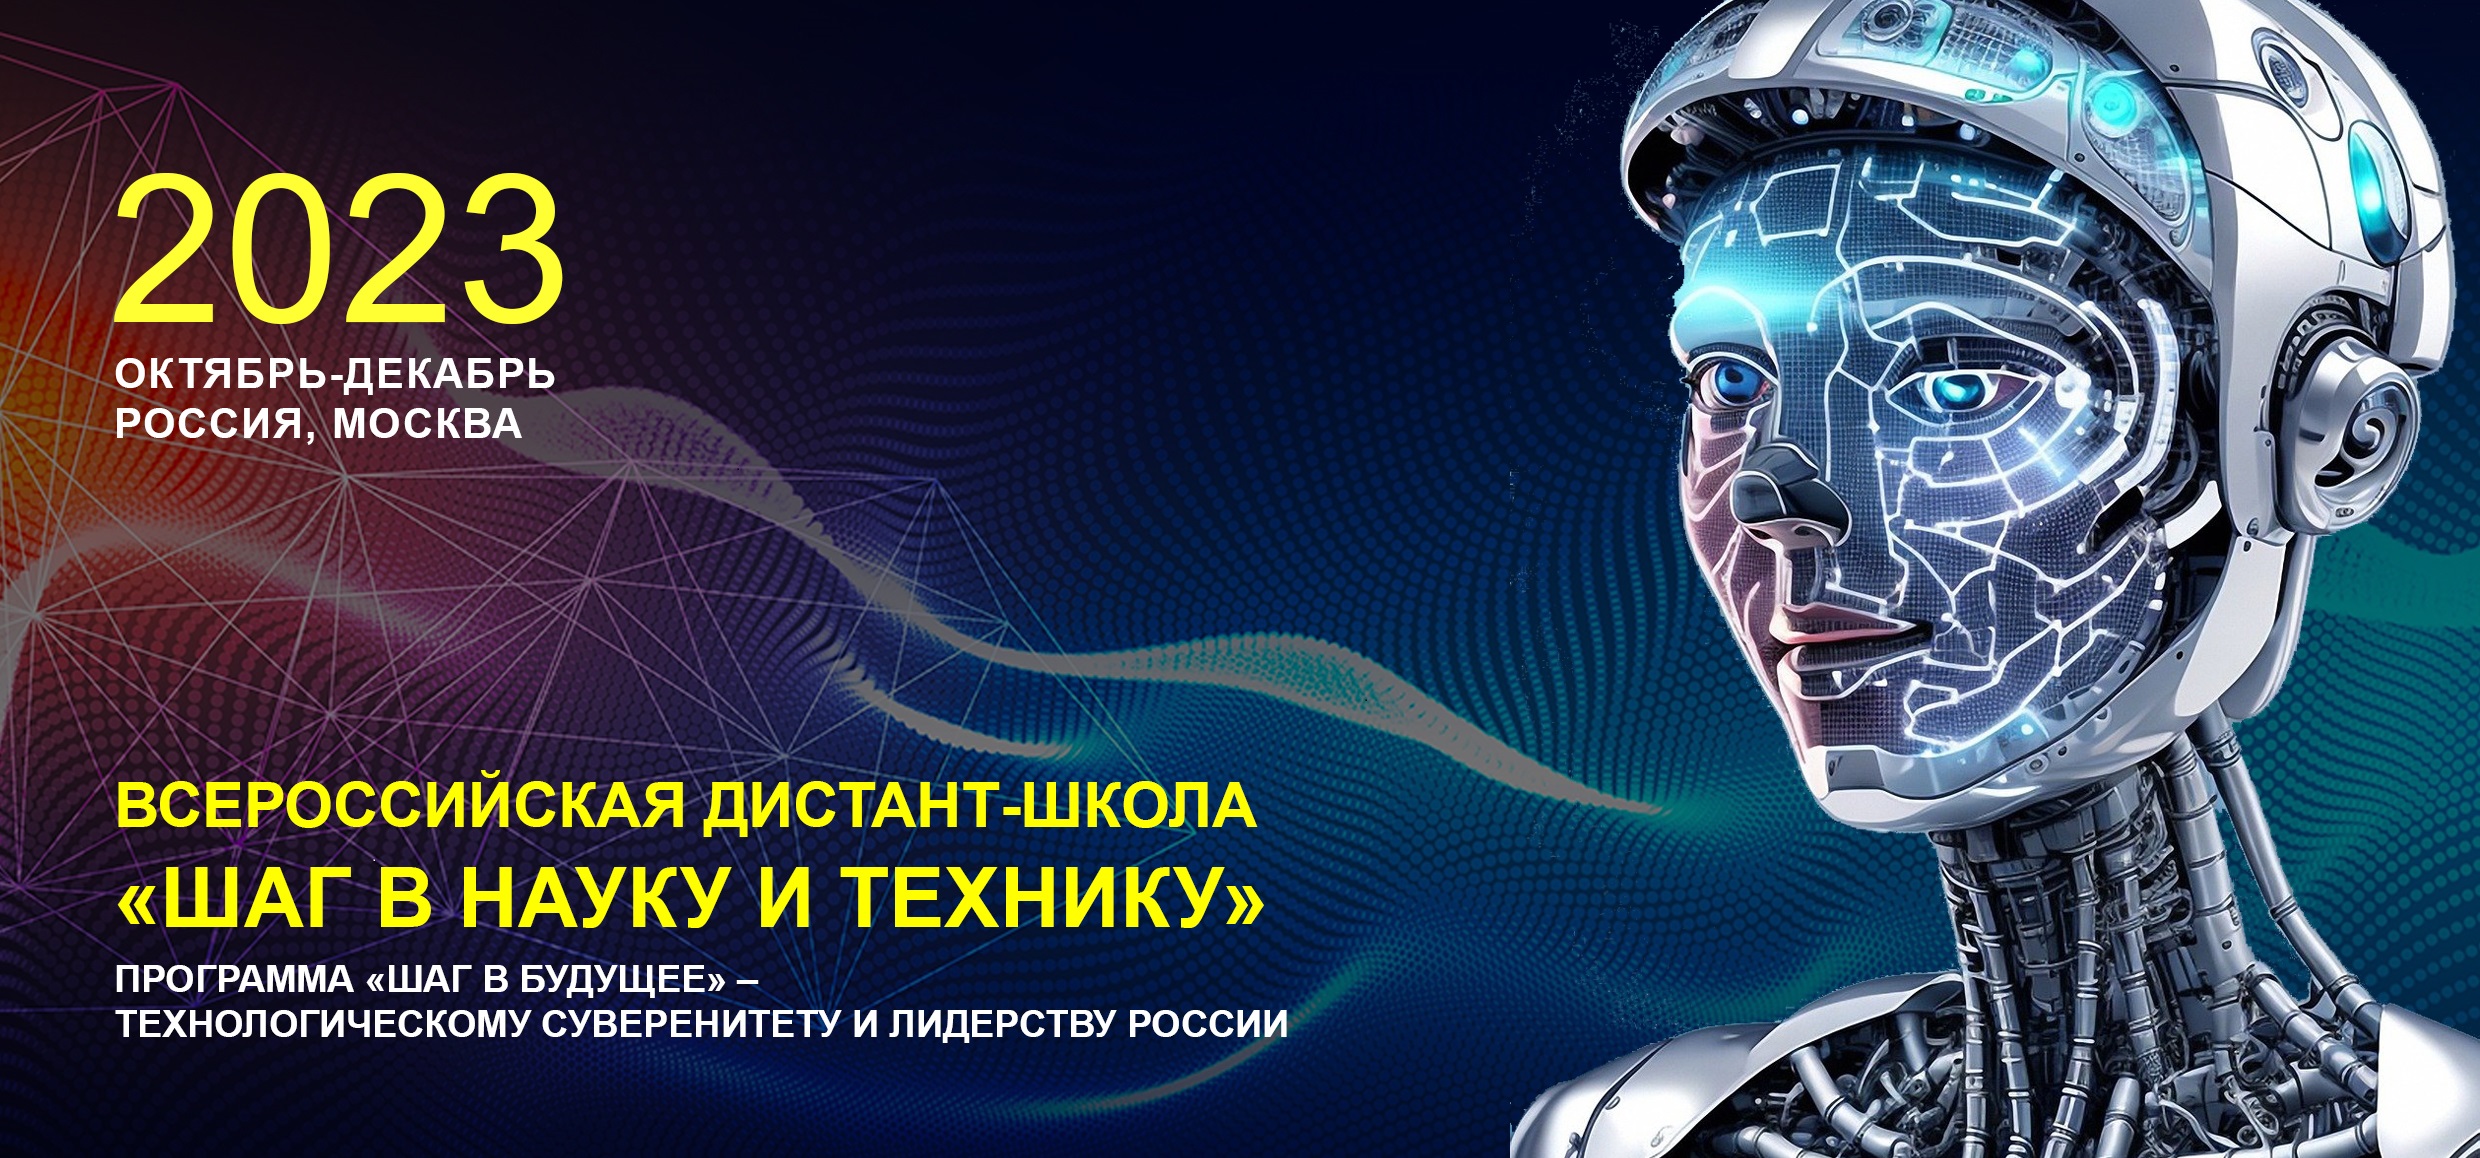 Программа «Шаг в будущее» – технологическому суверенитету и лидерству России  - фото 1